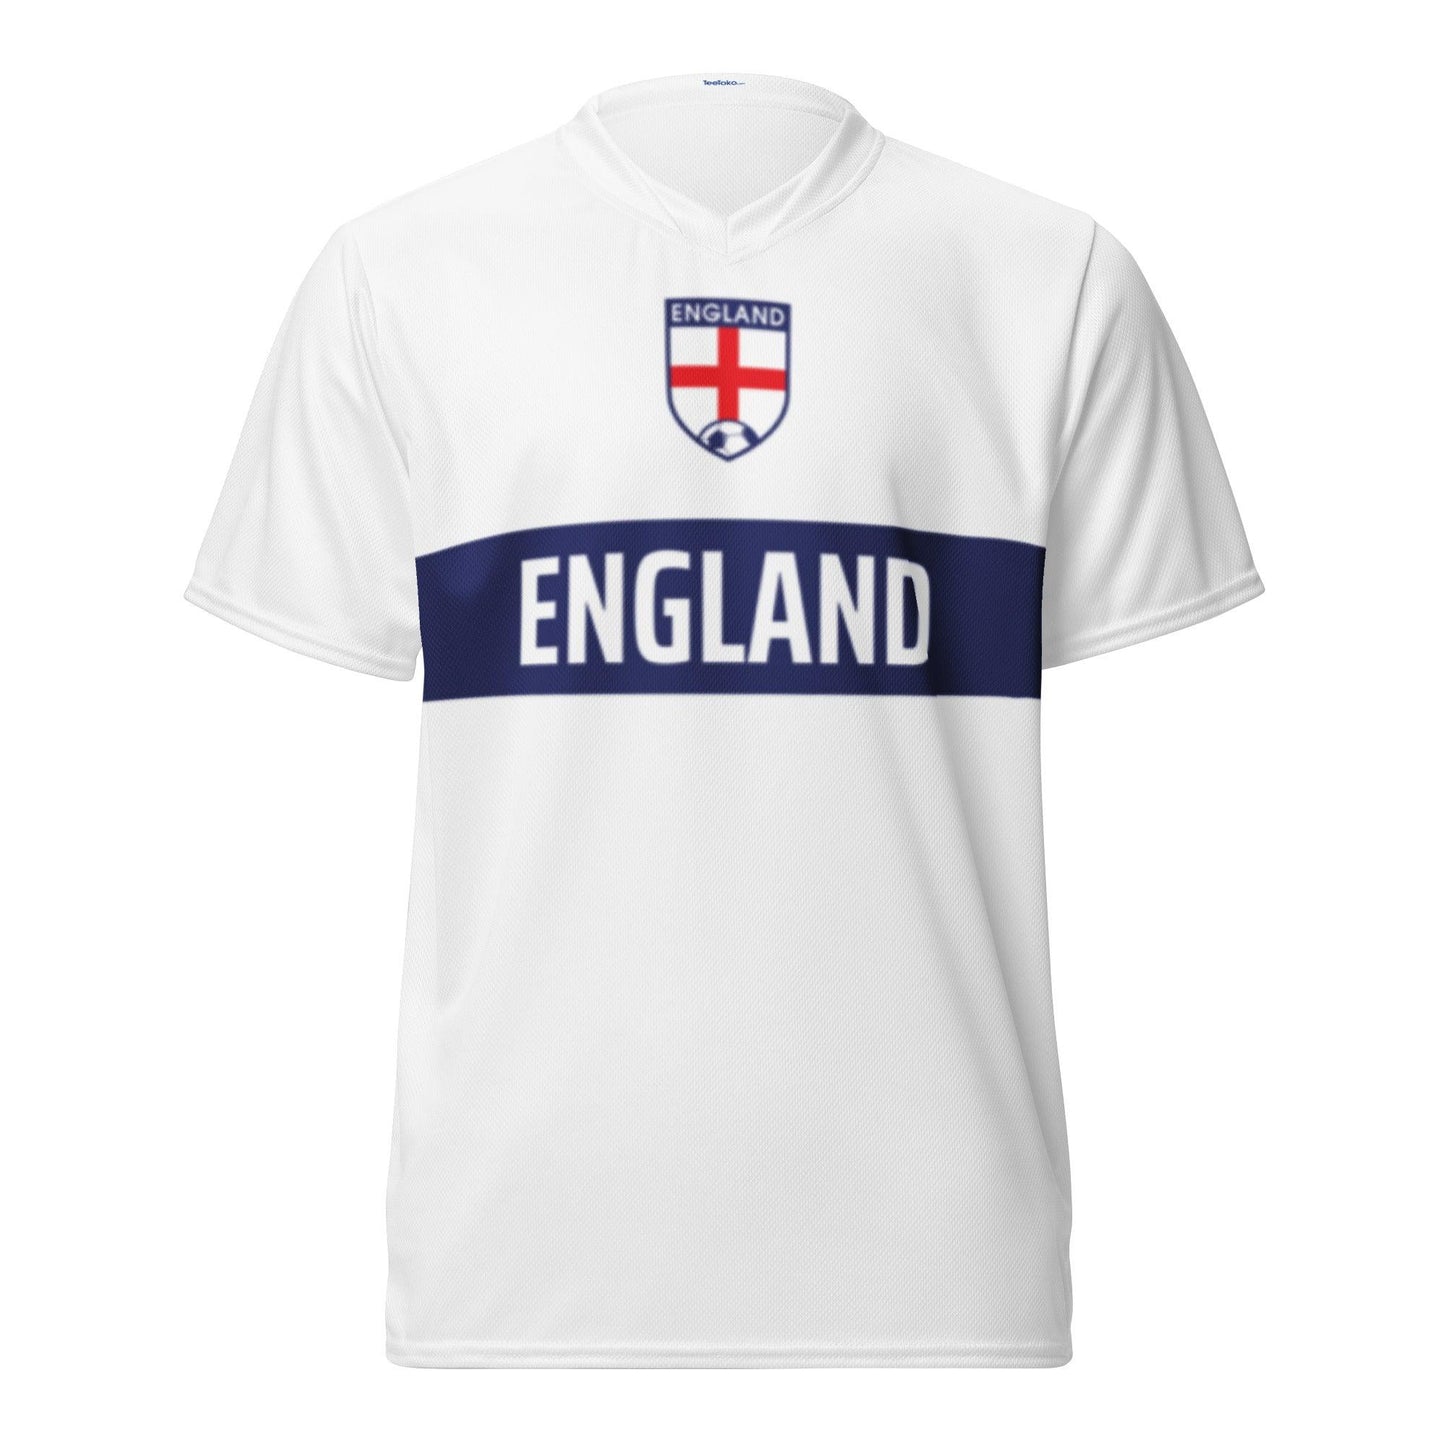 Engeland Voetbalshirt Thuis - Wit met Blauwe balk en England tekst